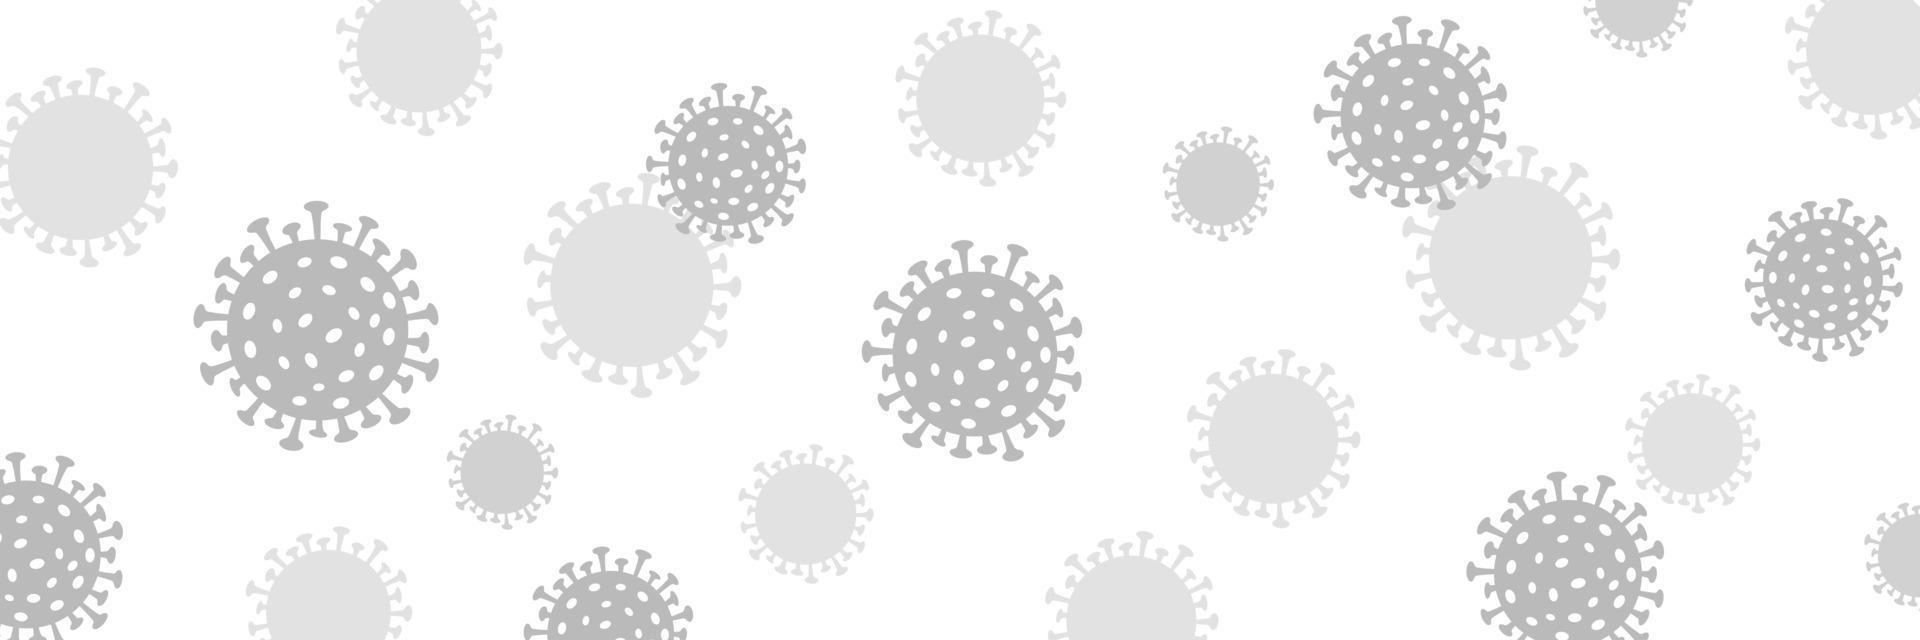 vliegend grijs bacterie coronavirus achtergrond. monochroom ballen met afzuiging kop poten verspreiden epidemie. vector